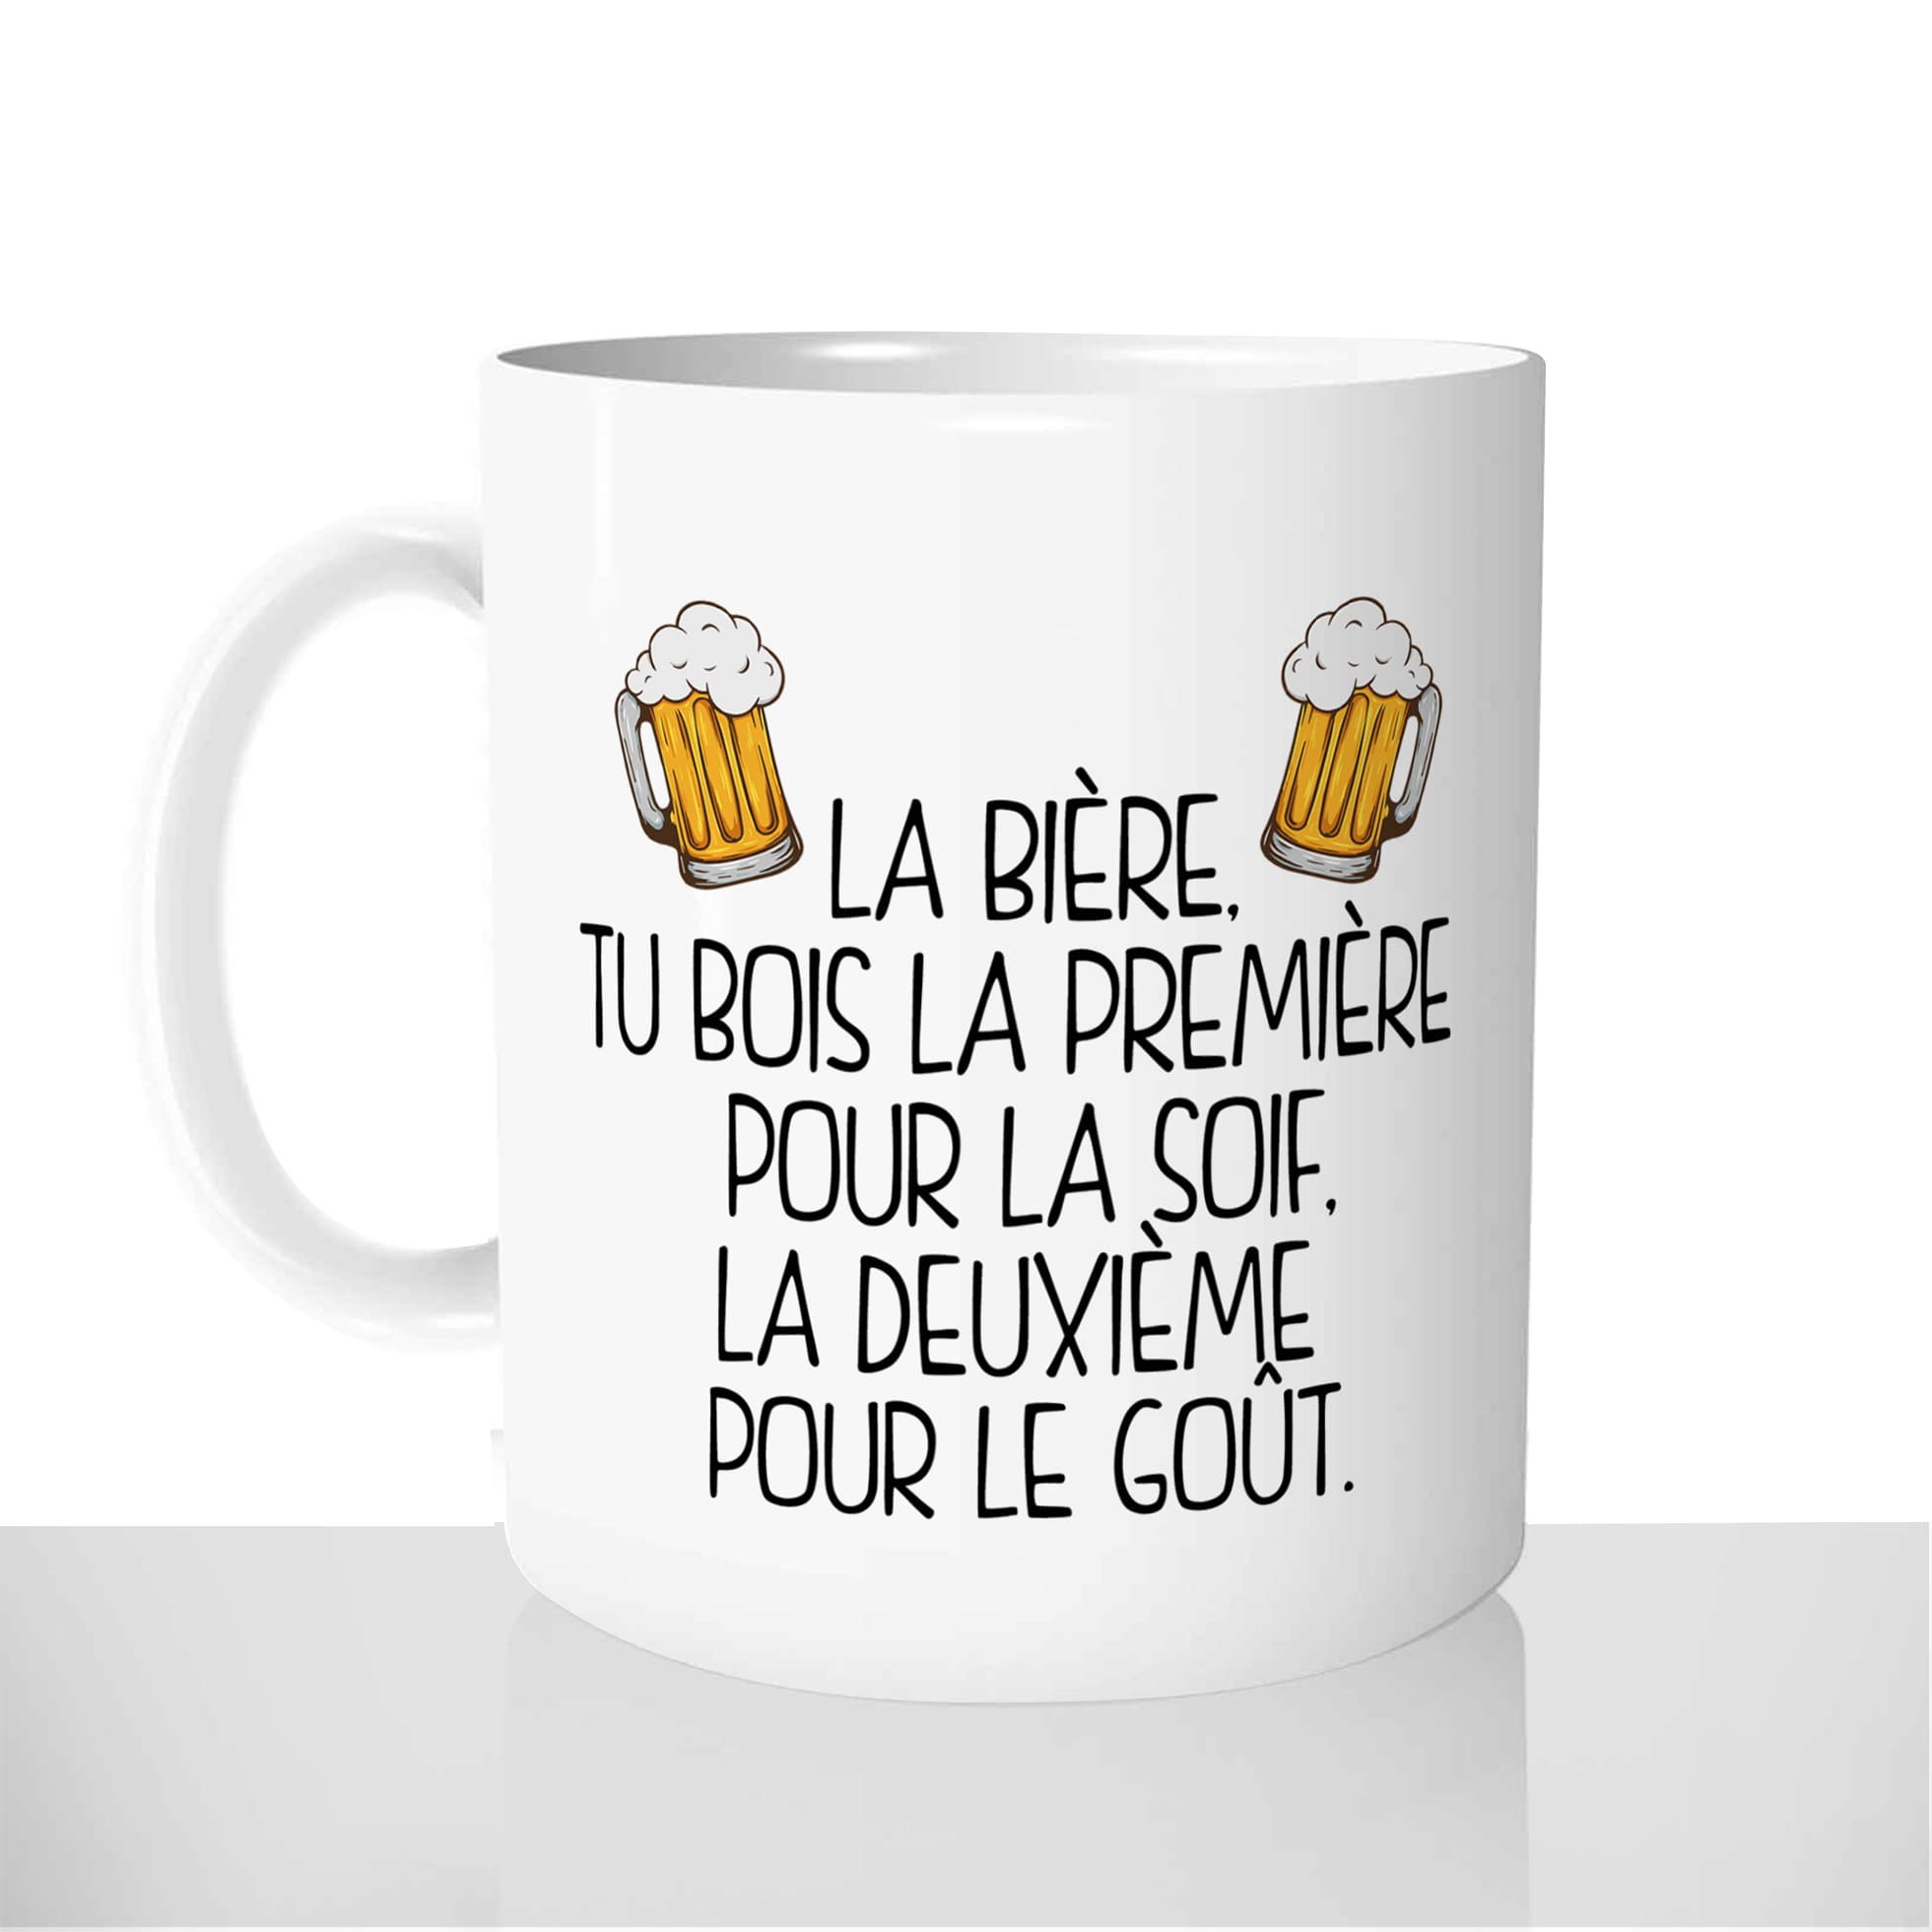 mug-tasse-blanc-personnalisé-biere-bar-premiere-pour-le-gout-soif-homme-idée-cadeau-original-personnalisable-france